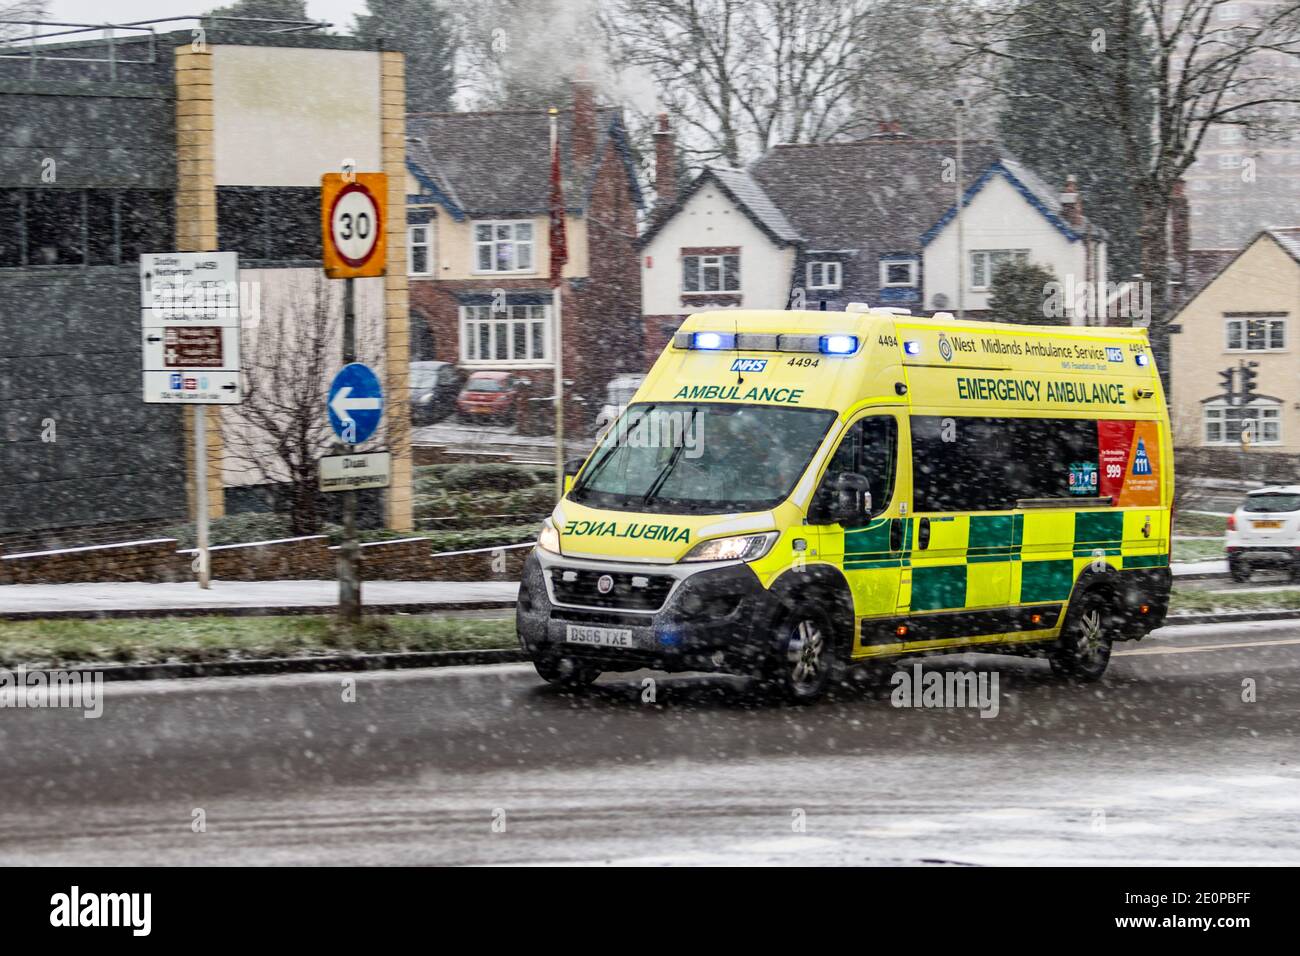 Une ambulance d'urgence traverse une chute de neige dans une ville, au Royaume-Uni Banque D'Images